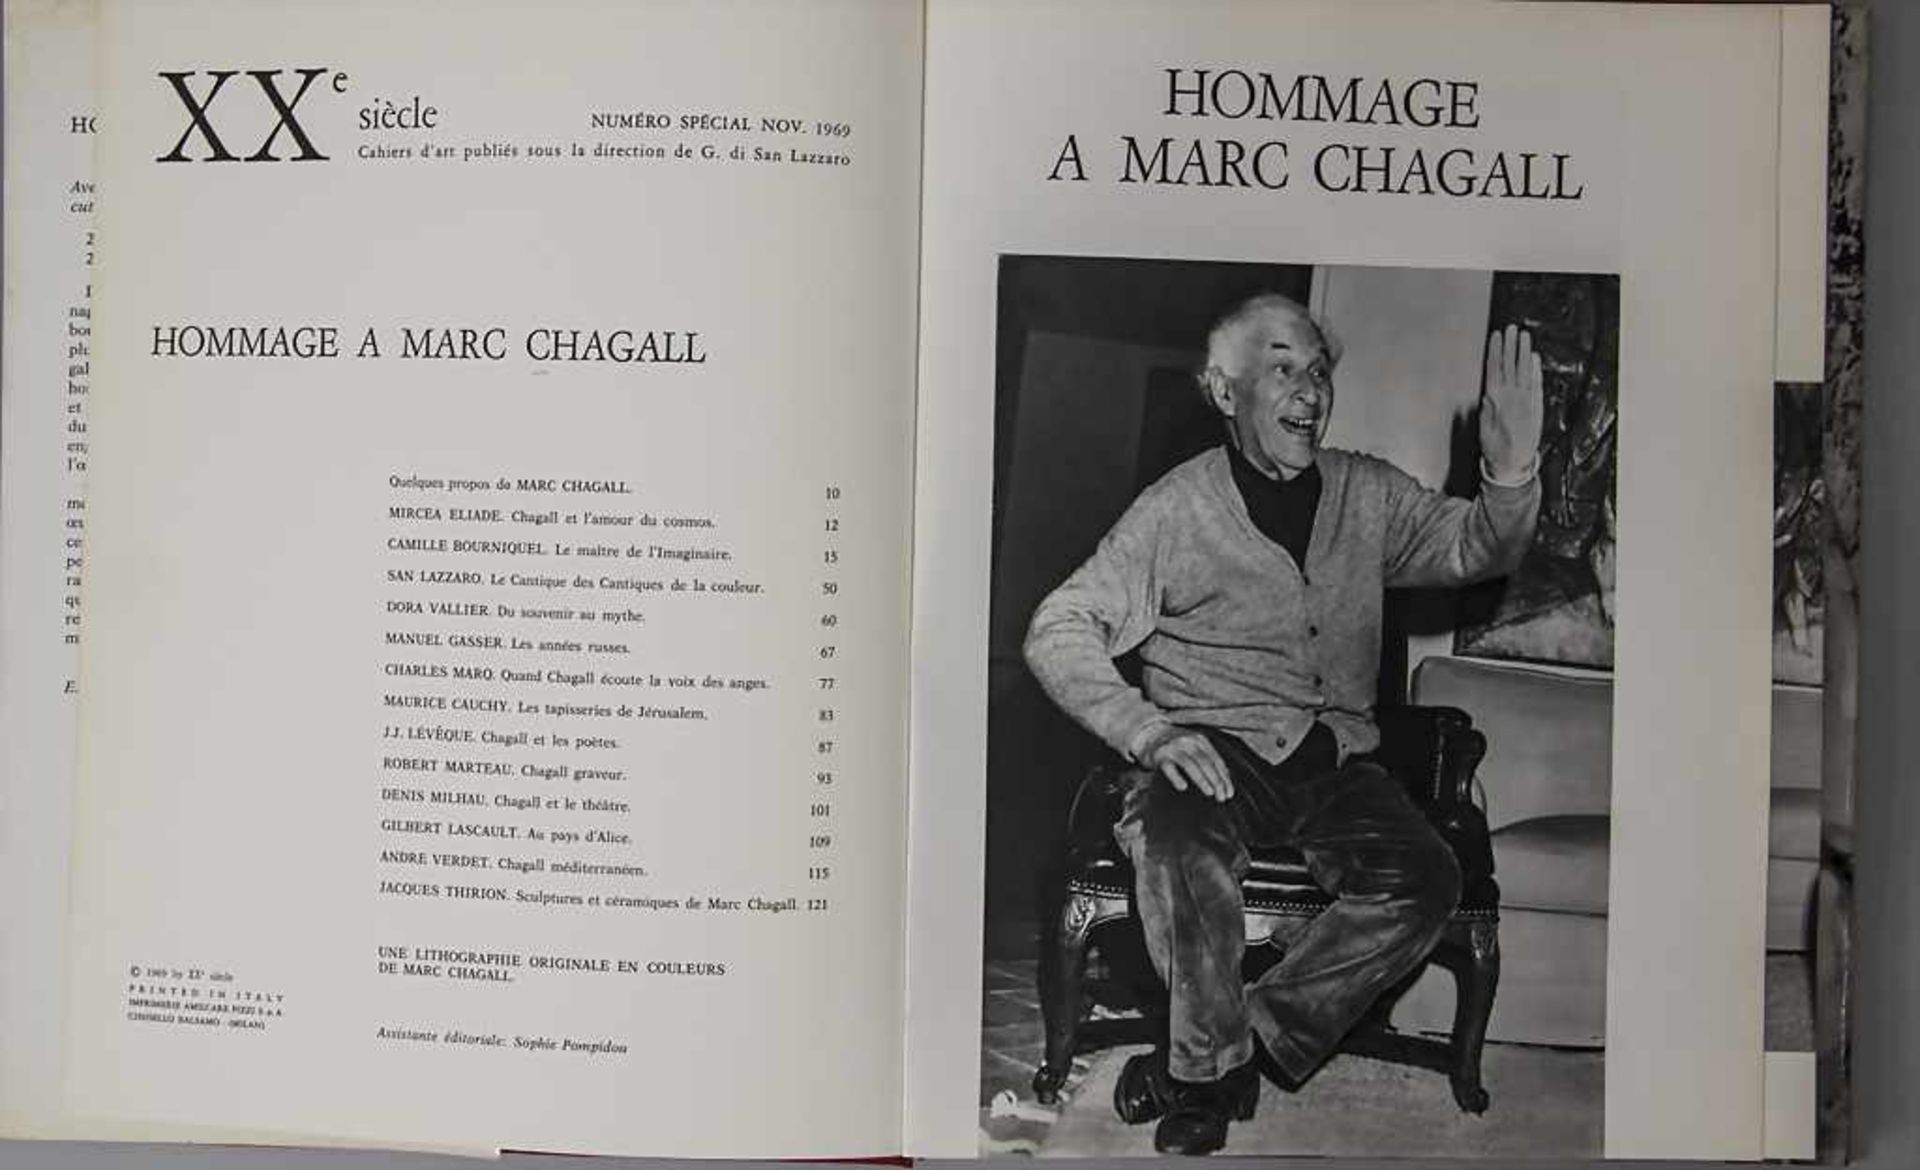 Hommage à Marc Chagall-Numéro special de XX siecle - Image 2 of 3